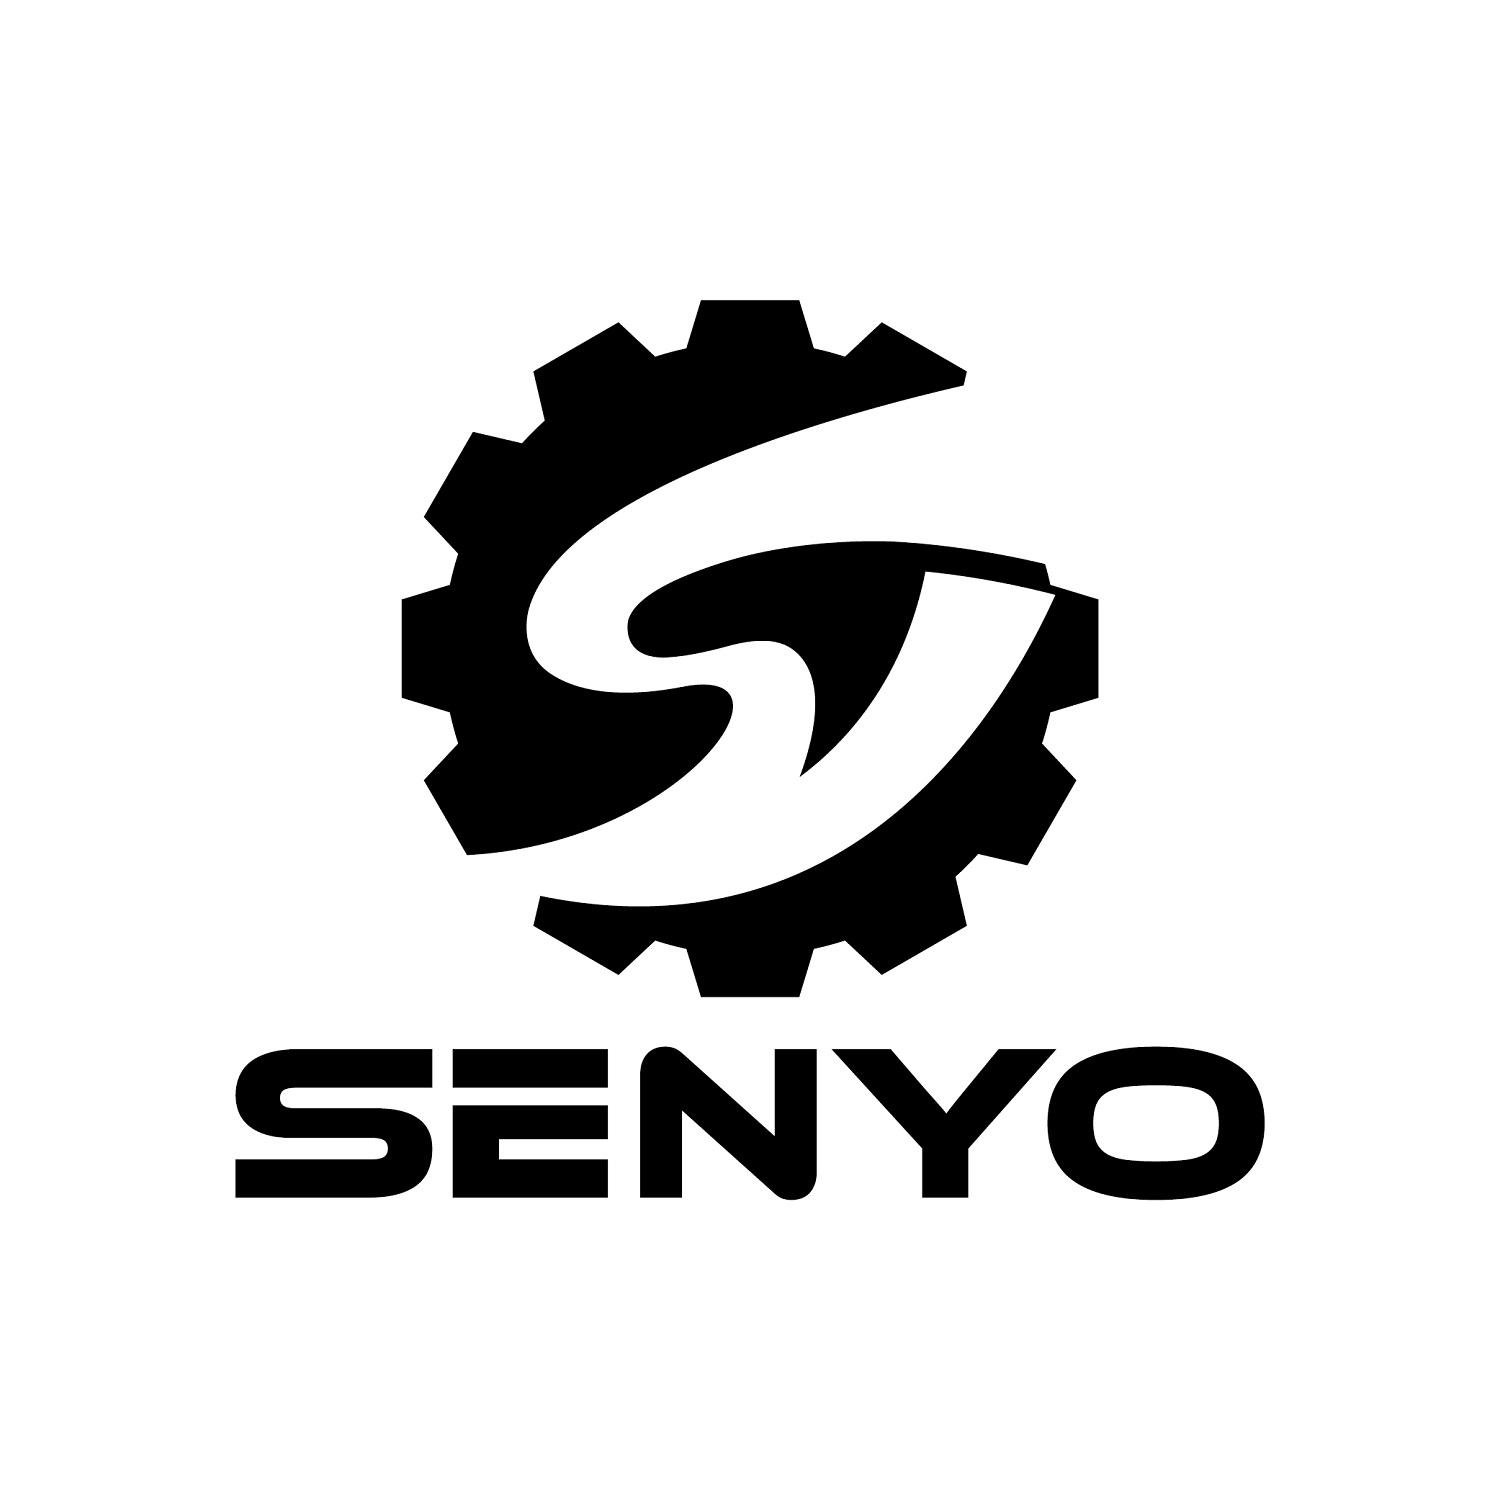 商标文字senyo商标注册号 56555173,商标申请人河南盛优机械有限公司